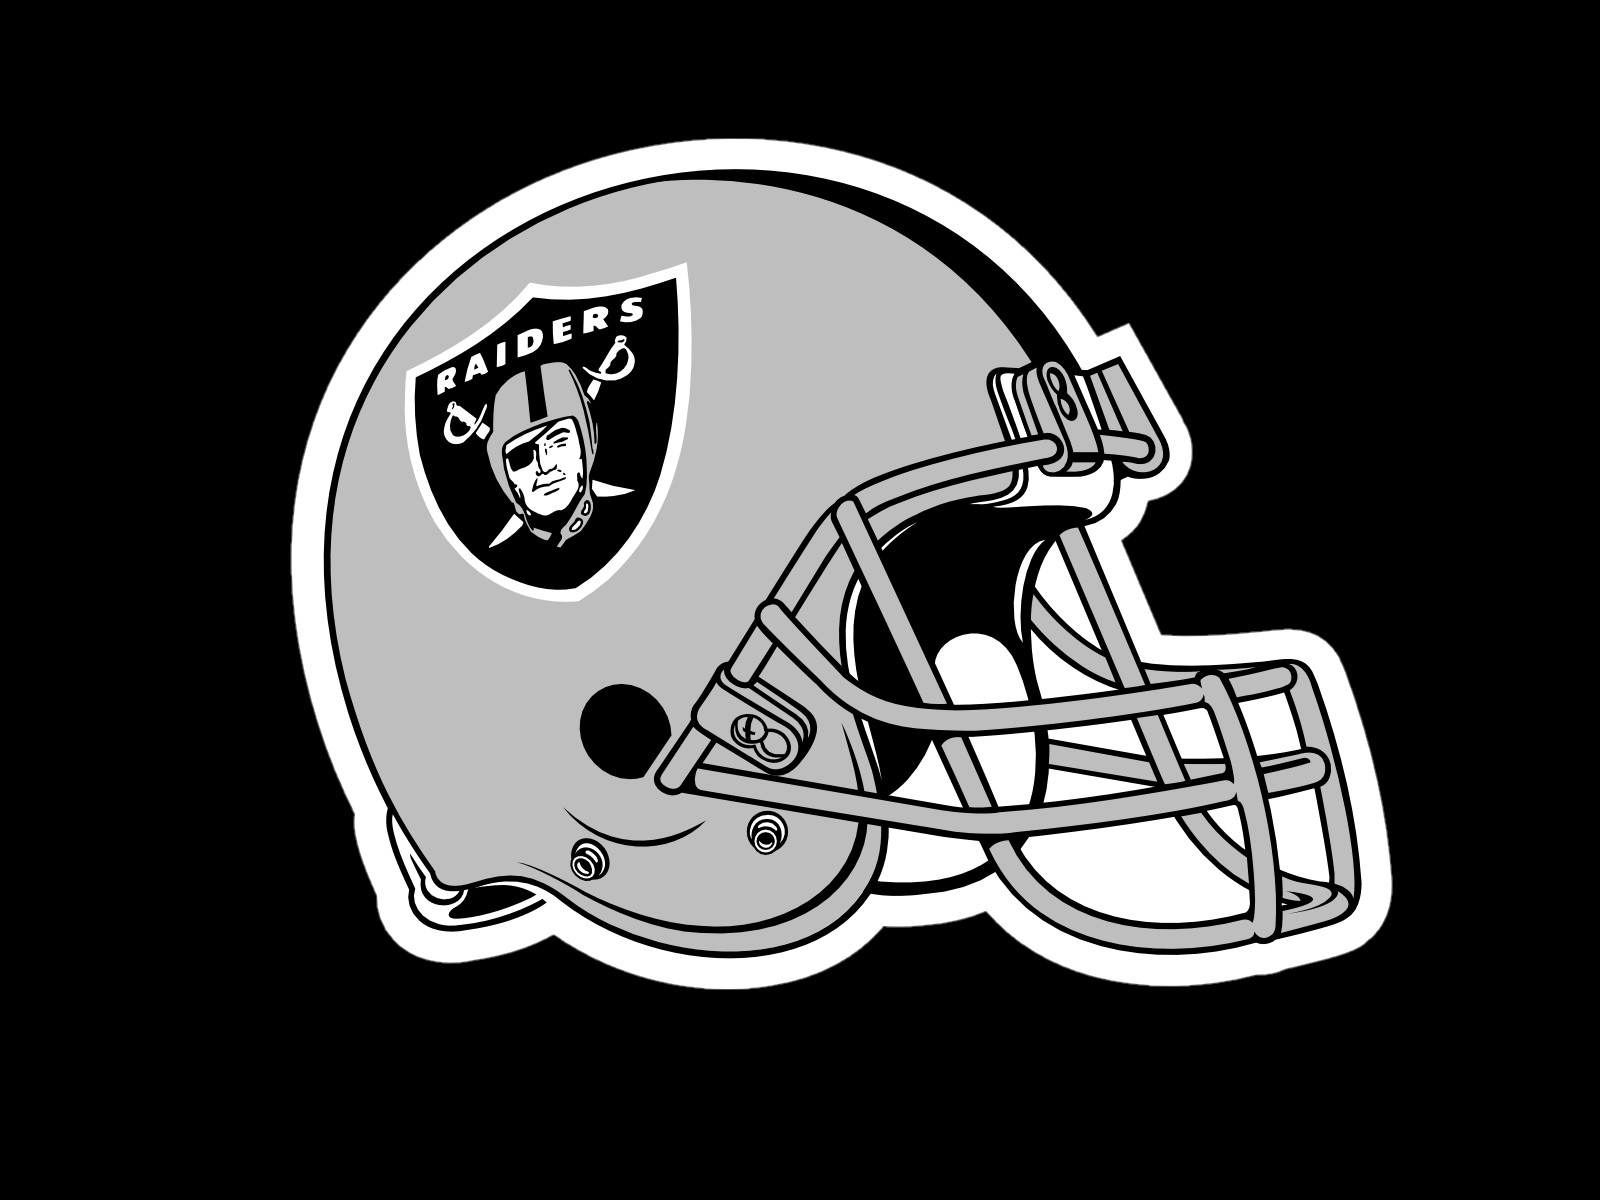 Oakland Raiders Helmet Logo On Black Background - Oakland Raiders Helmet Logo - HD Wallpaper 